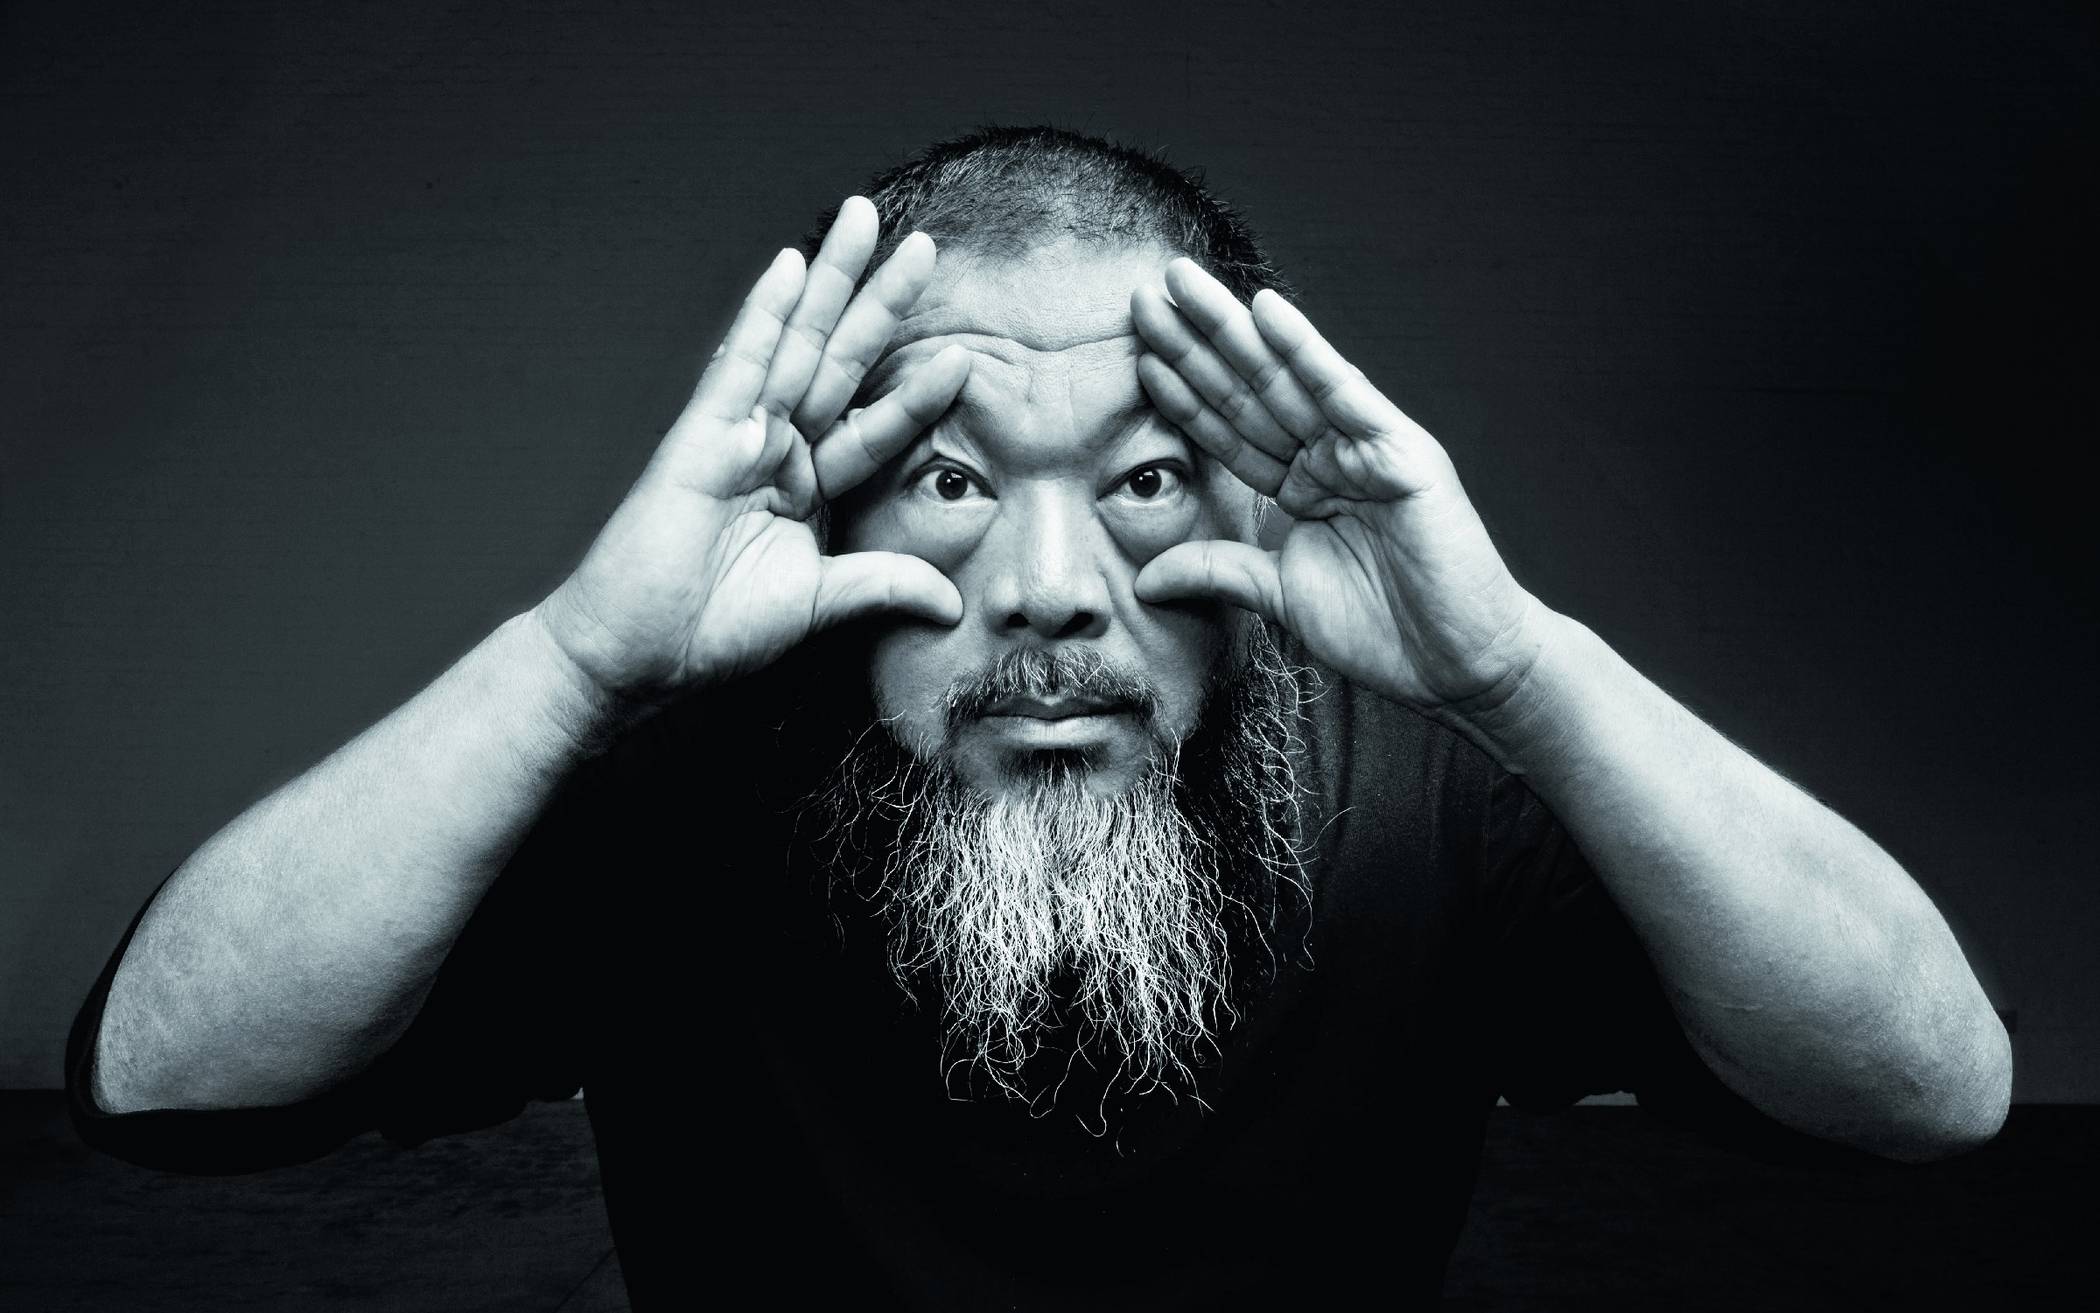 Öffnet mit seinen Werken nicht nur sich die Augen: Künstler und Aktivist Ai Weiwei zeigt seine bisher größte Ausstellung ab 18. Mai in Düsseldorf.